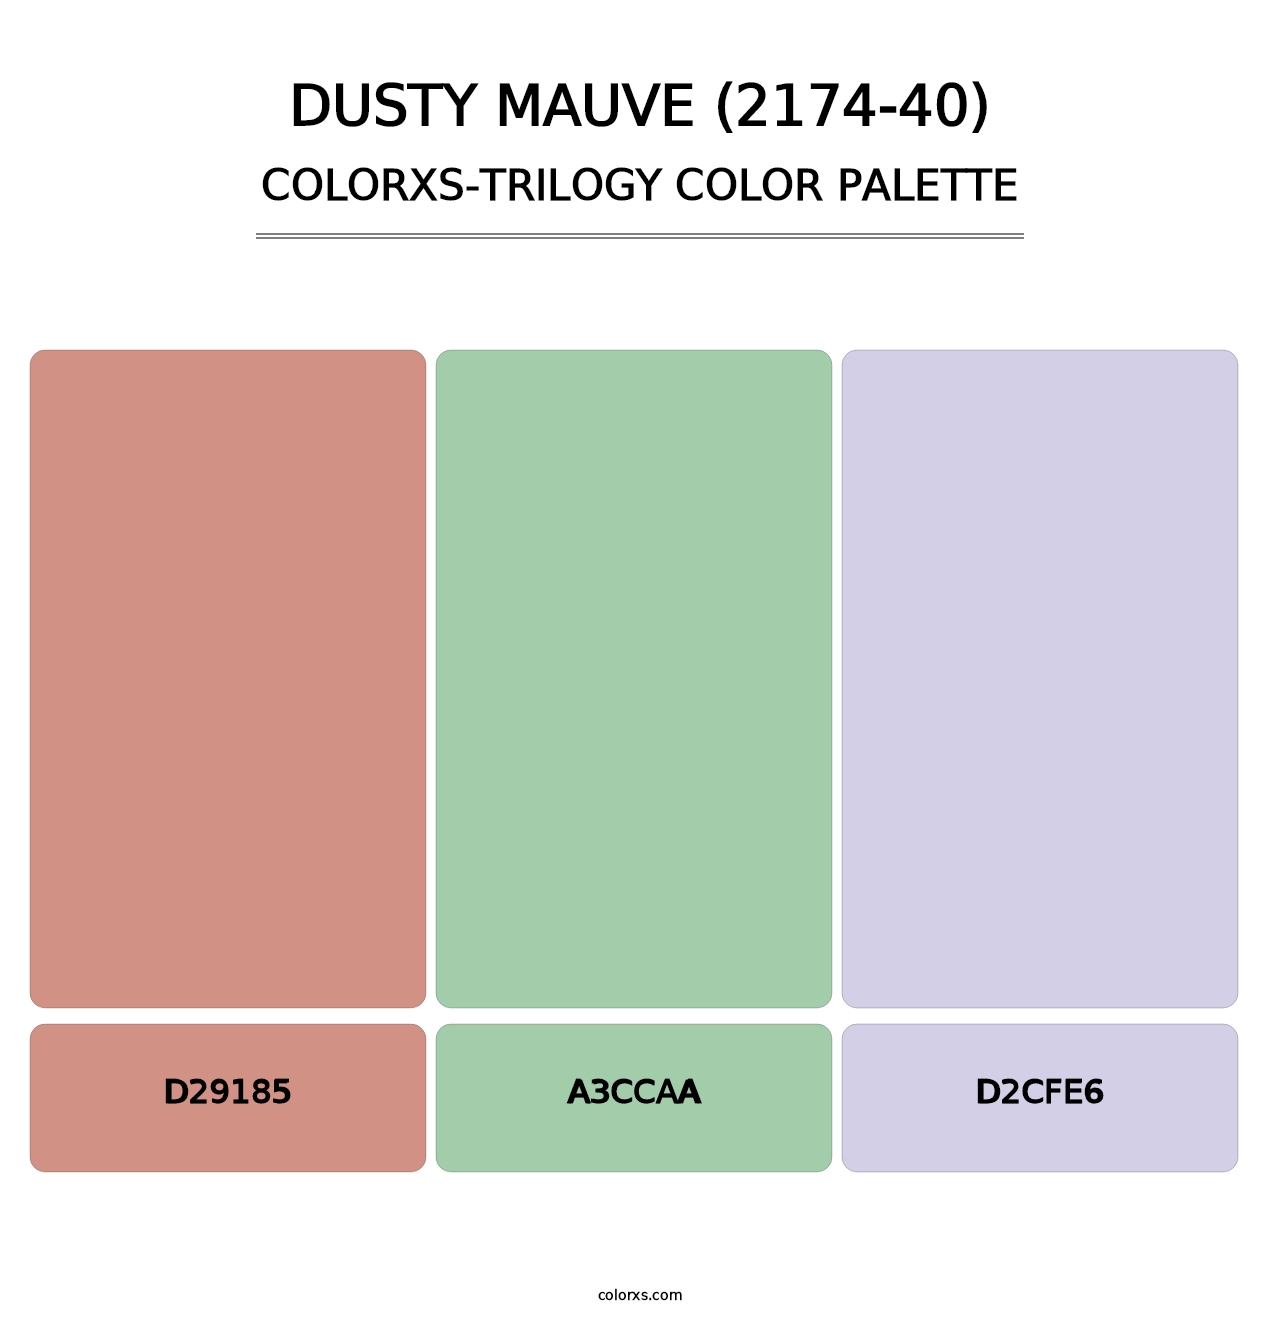 Dusty Mauve (2174-40) - Colorxs Trilogy Palette